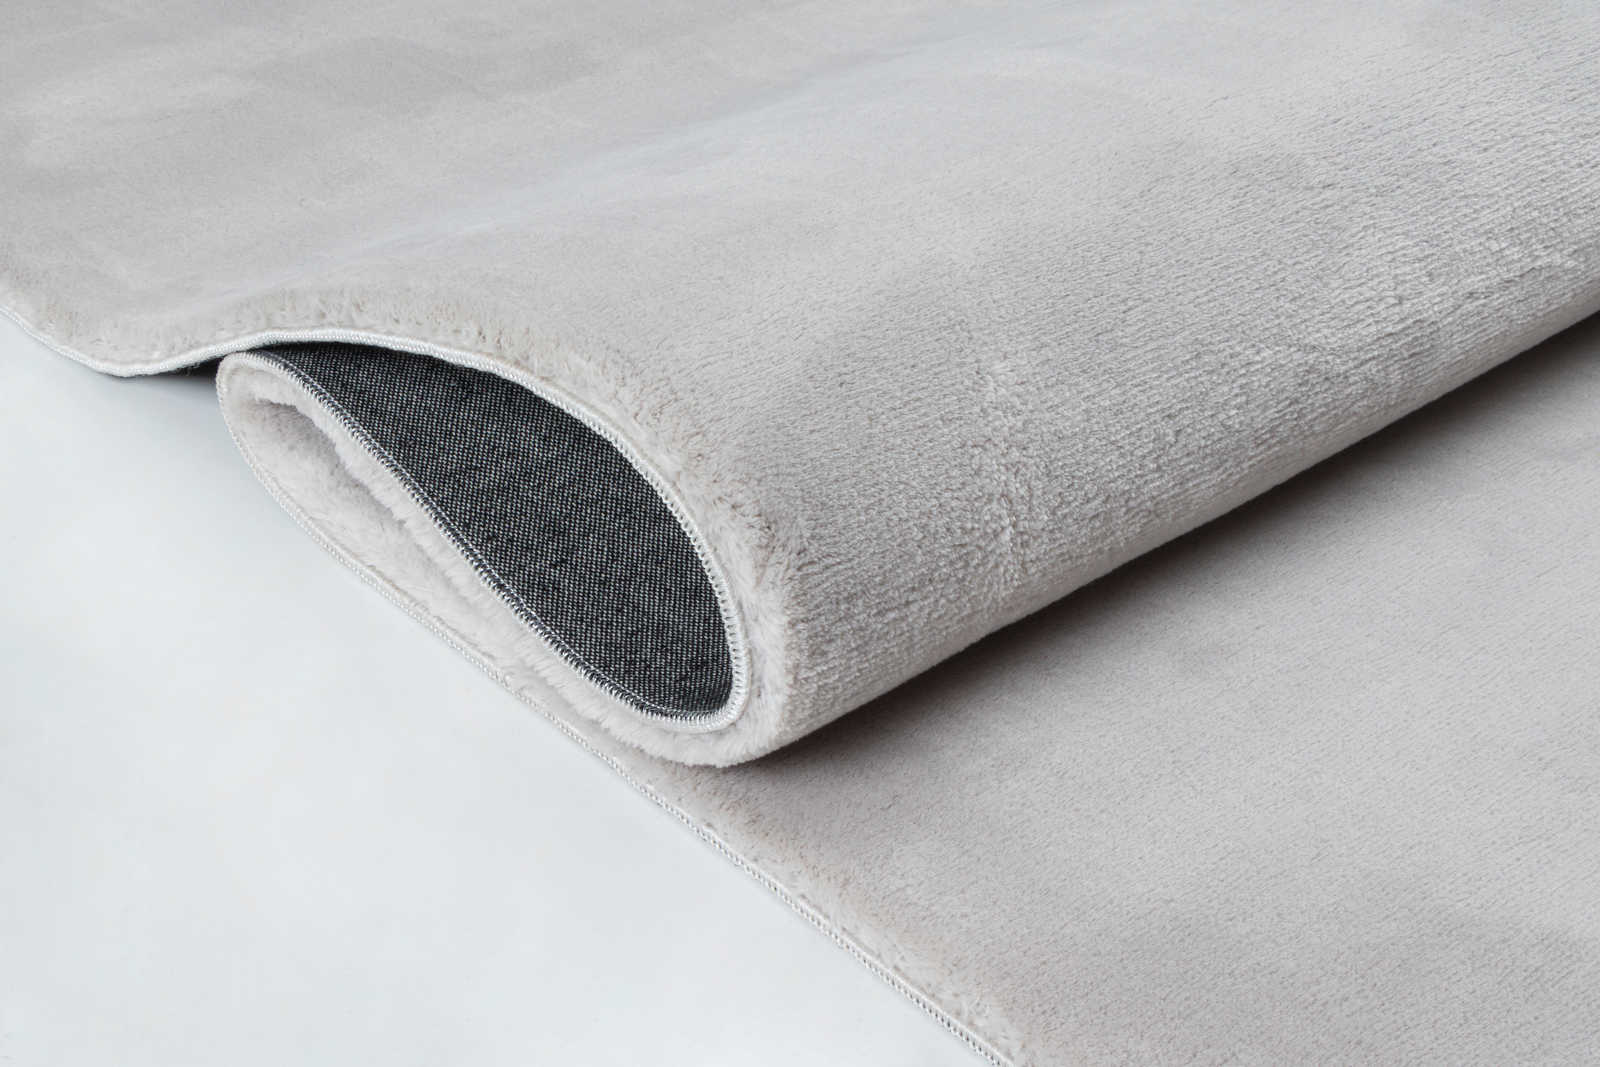             Accogliente tappeto a pelo alto in morbido grigio - 110 x 60 cm
        